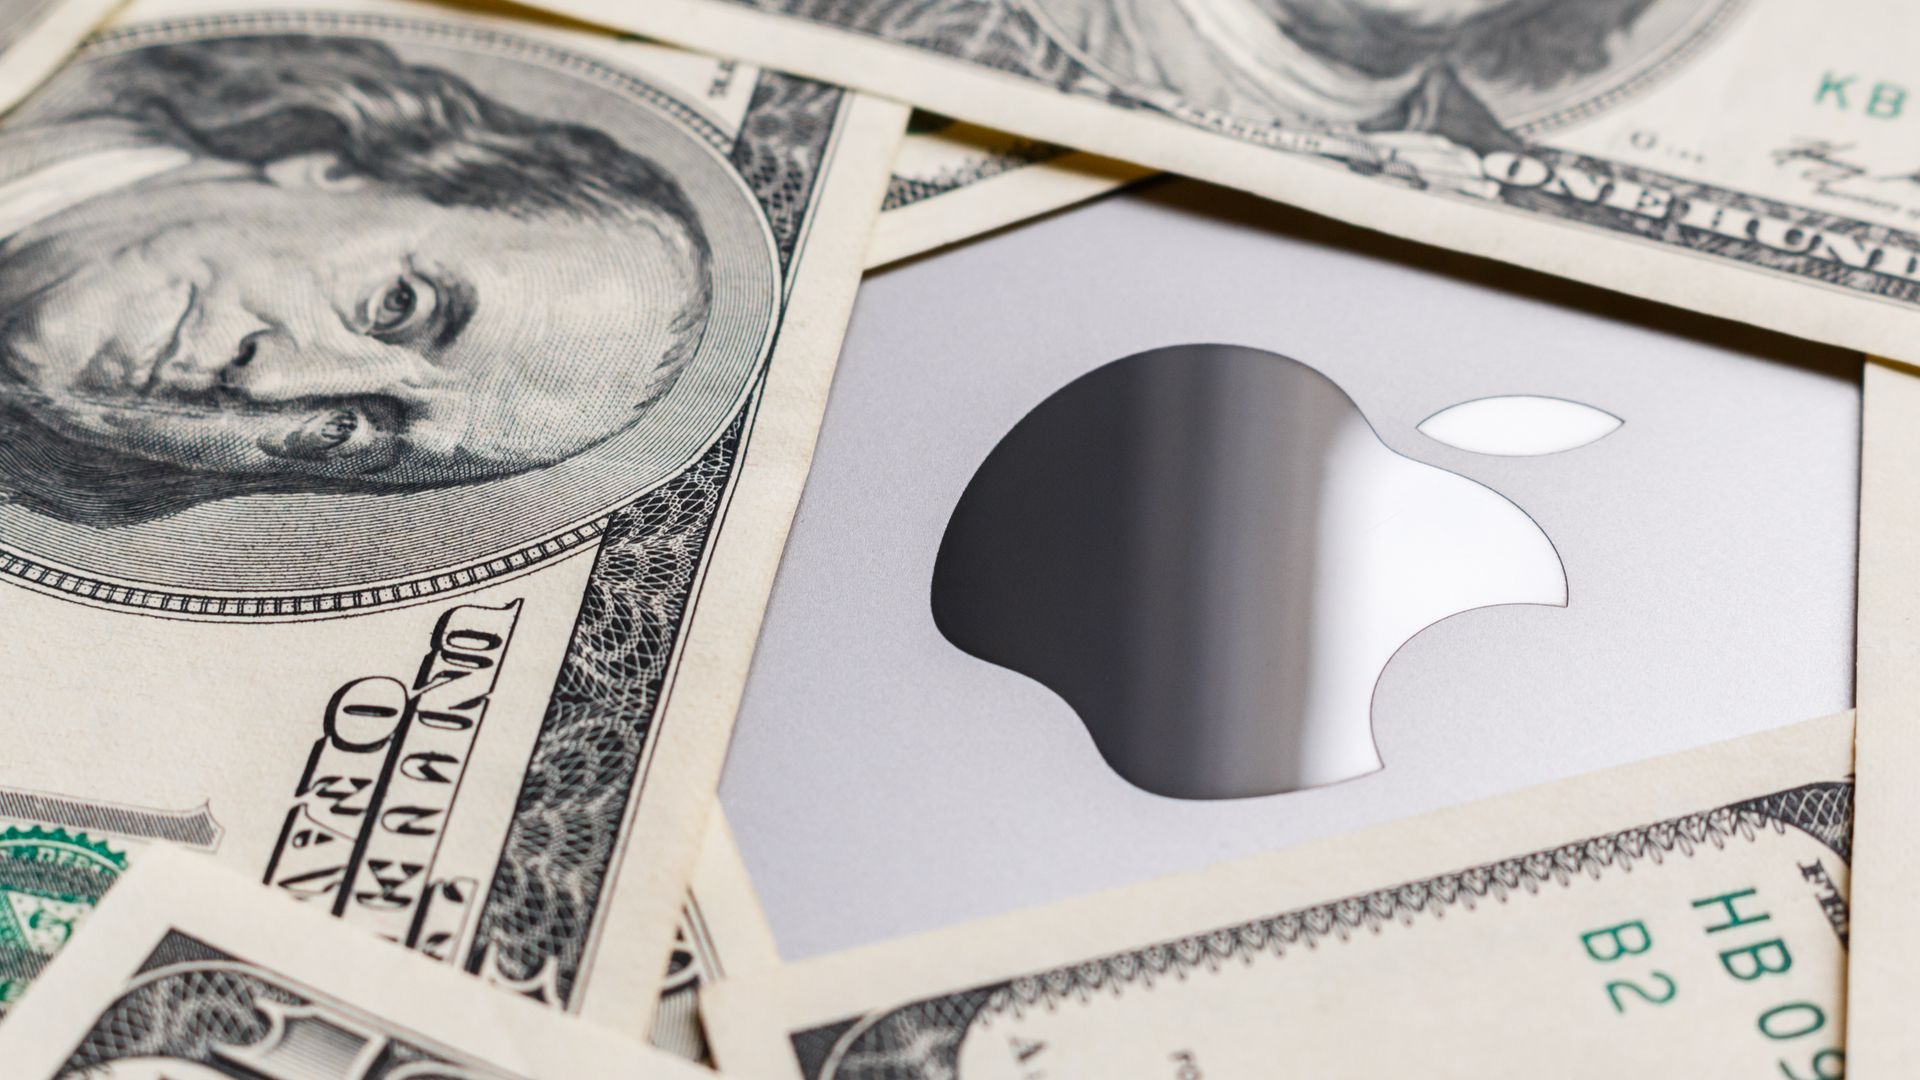 $100 bills surround an Apple logo